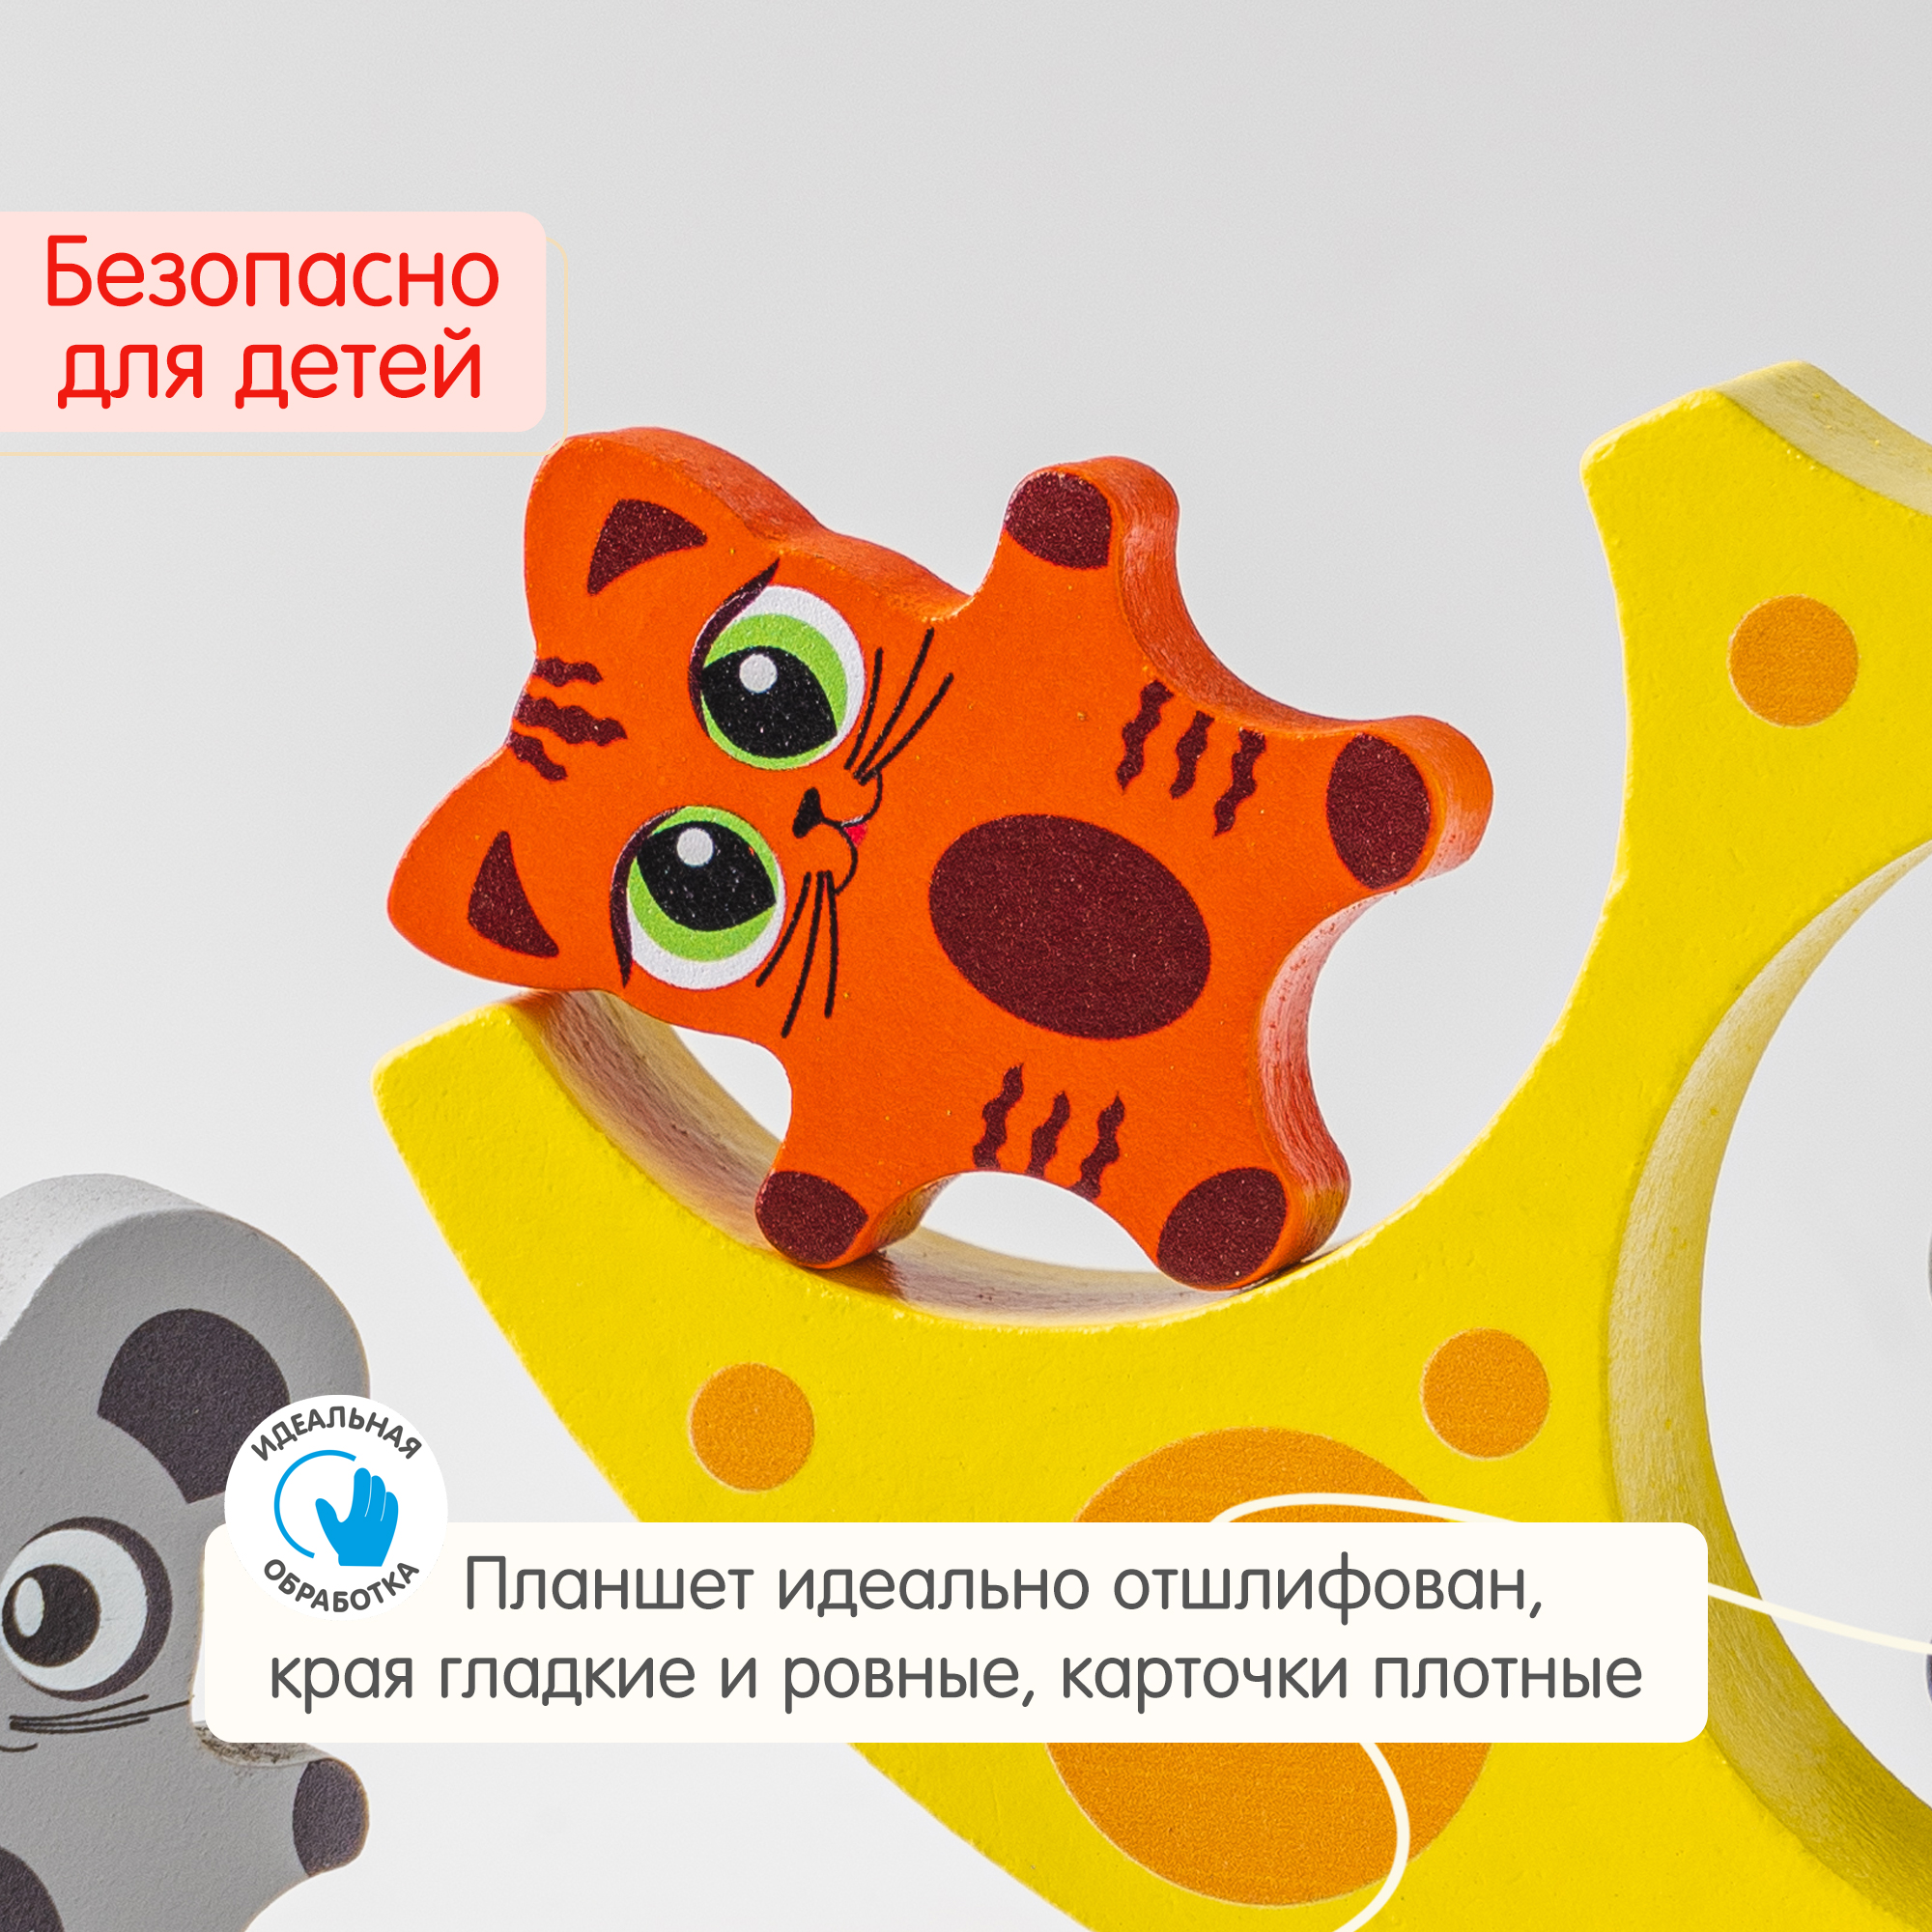 Балансир Кошки-Мышки Алатойс 8 фигурок деревянная развивающая игра - фото 7